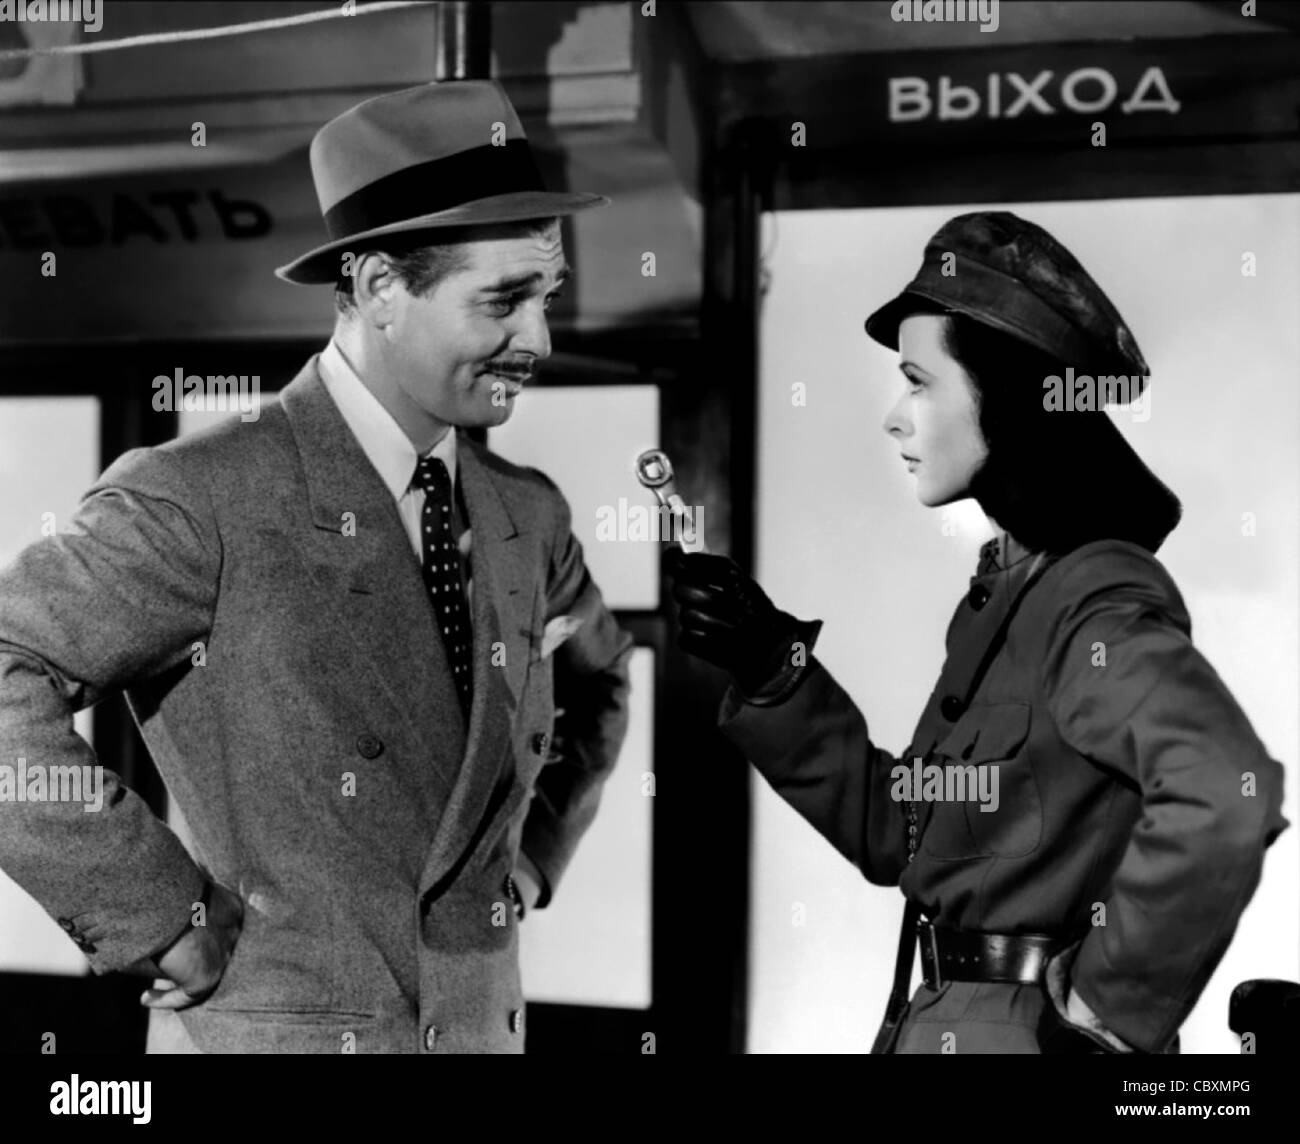 William Clark Gable (1. Februar 1901 – 16. November 1960) US-amerikanischer Schauspieler - Genosse X mit Heddy Lamarr Stockfoto